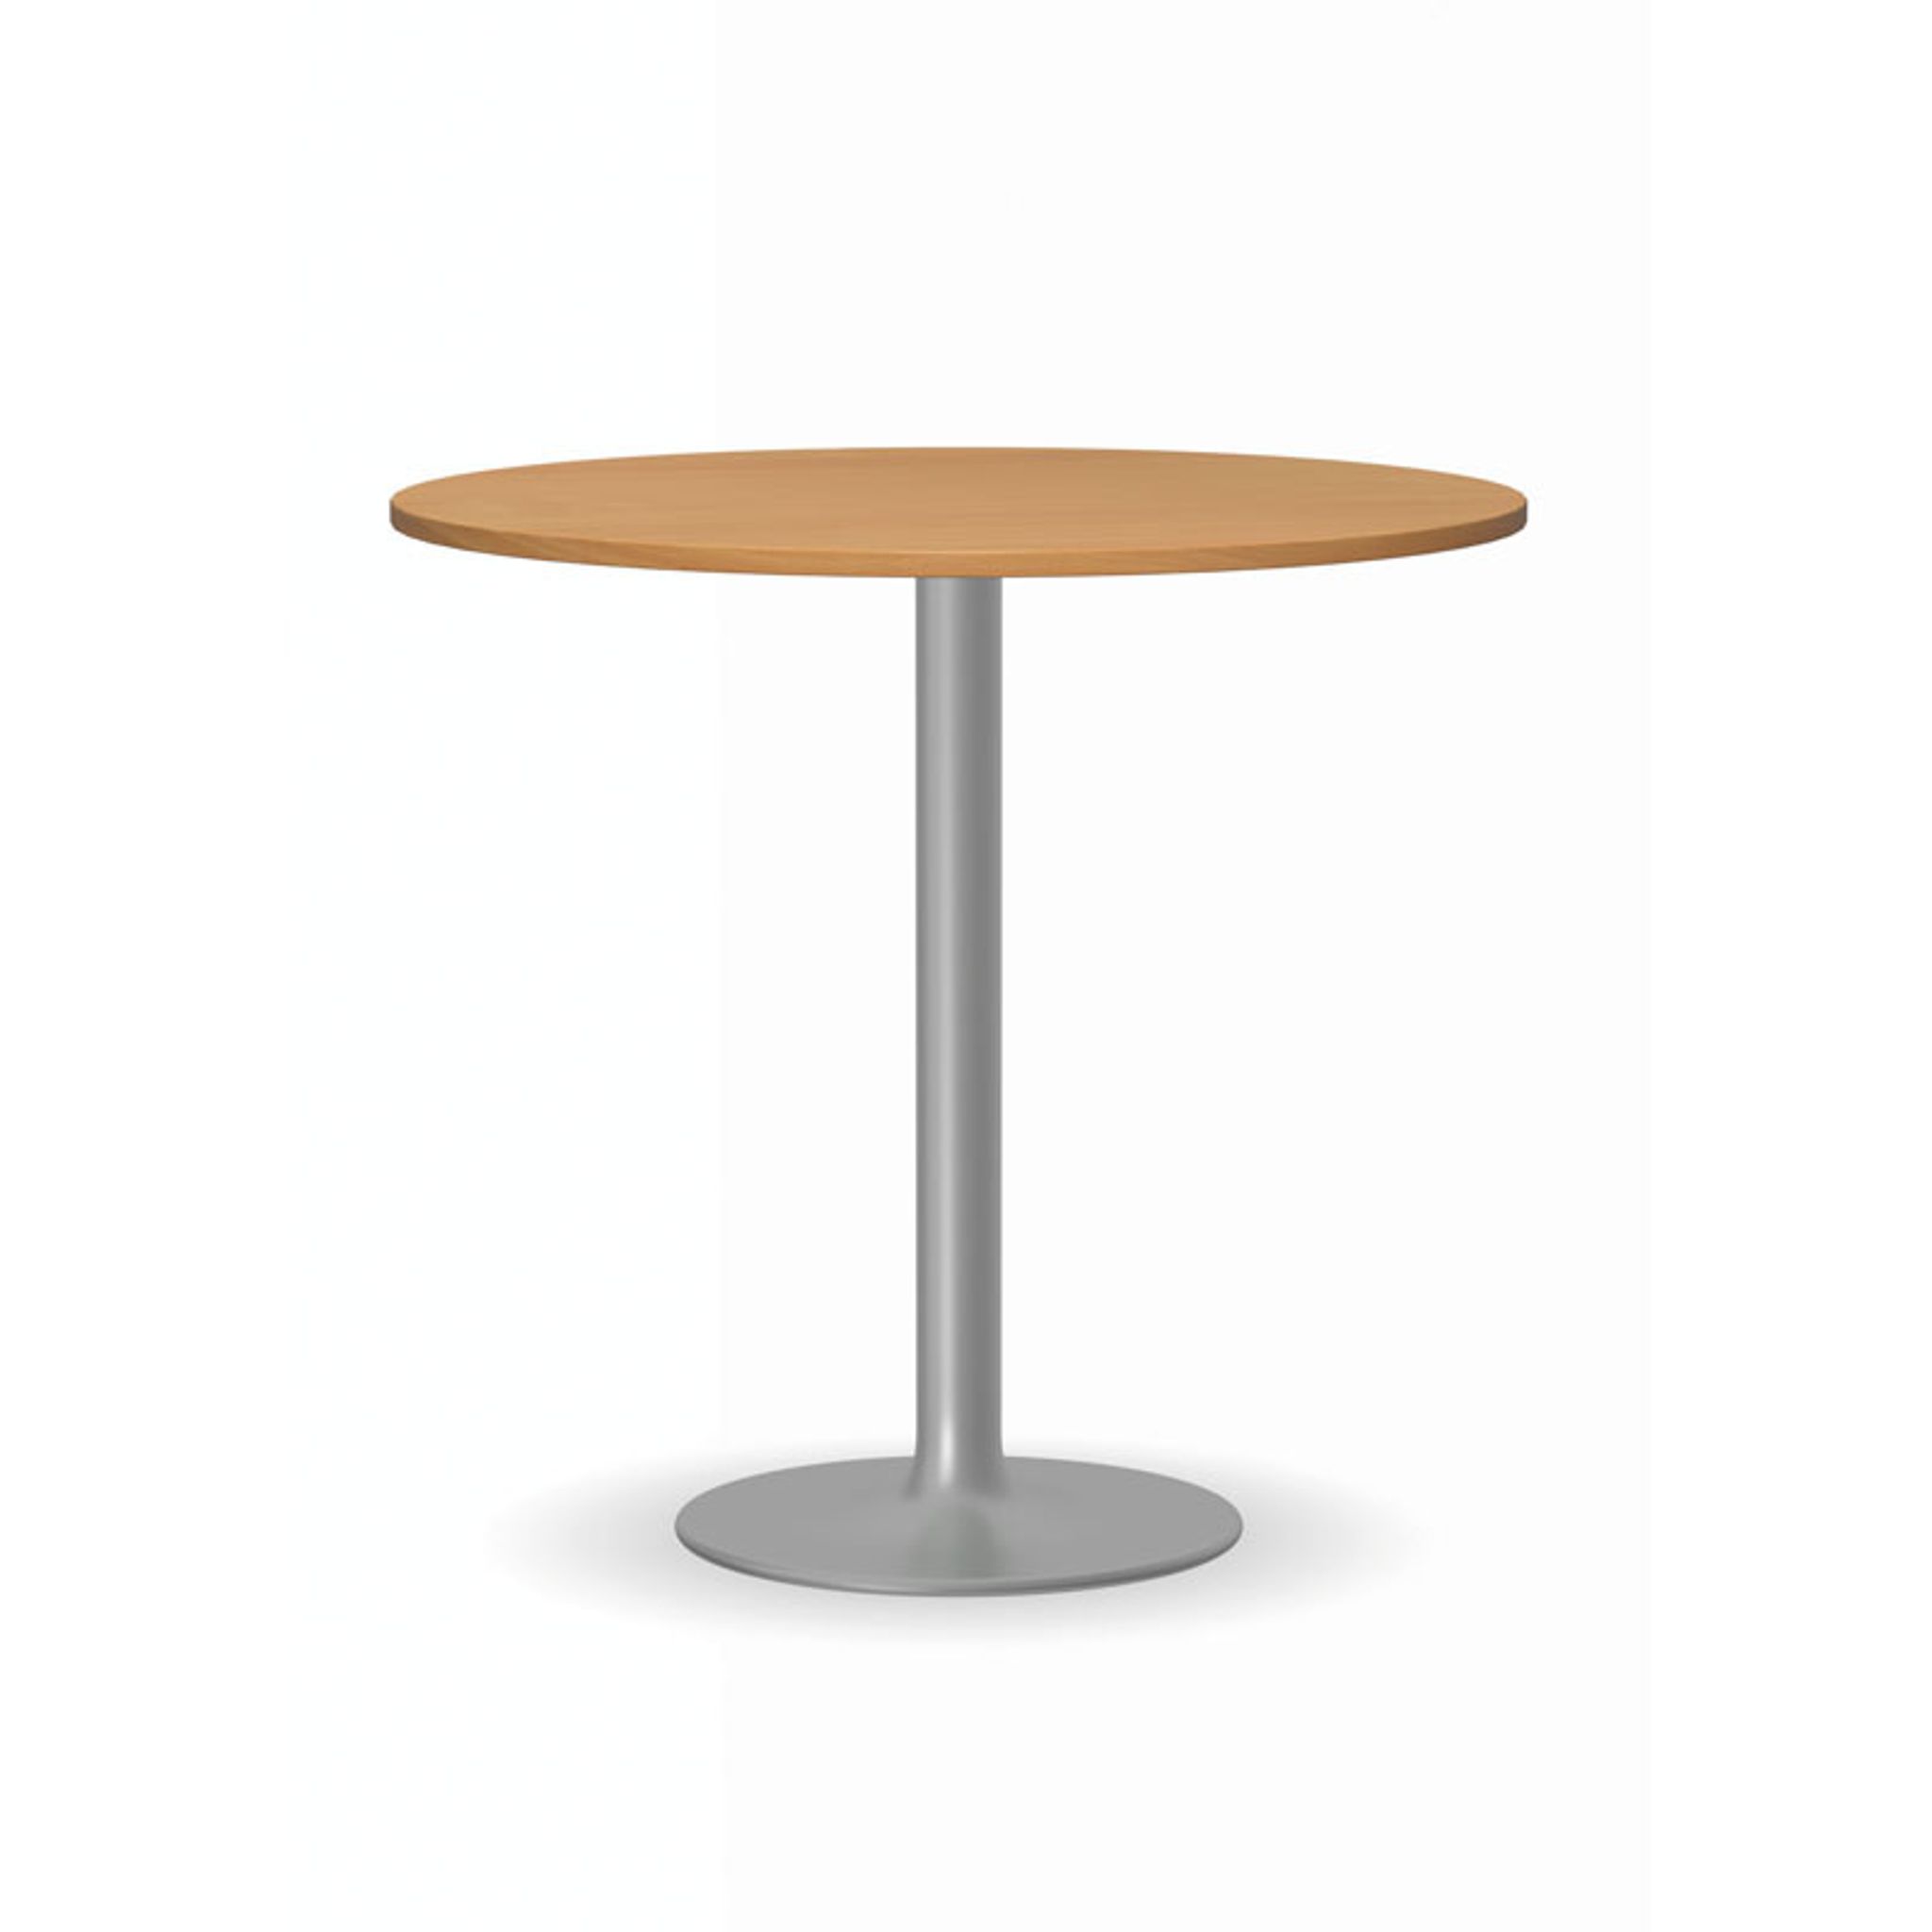 Konferenztisch rund, Bistrotisch FILIP II, Durchmesser 80 cm, graue Fußgestell, Platte Graphit